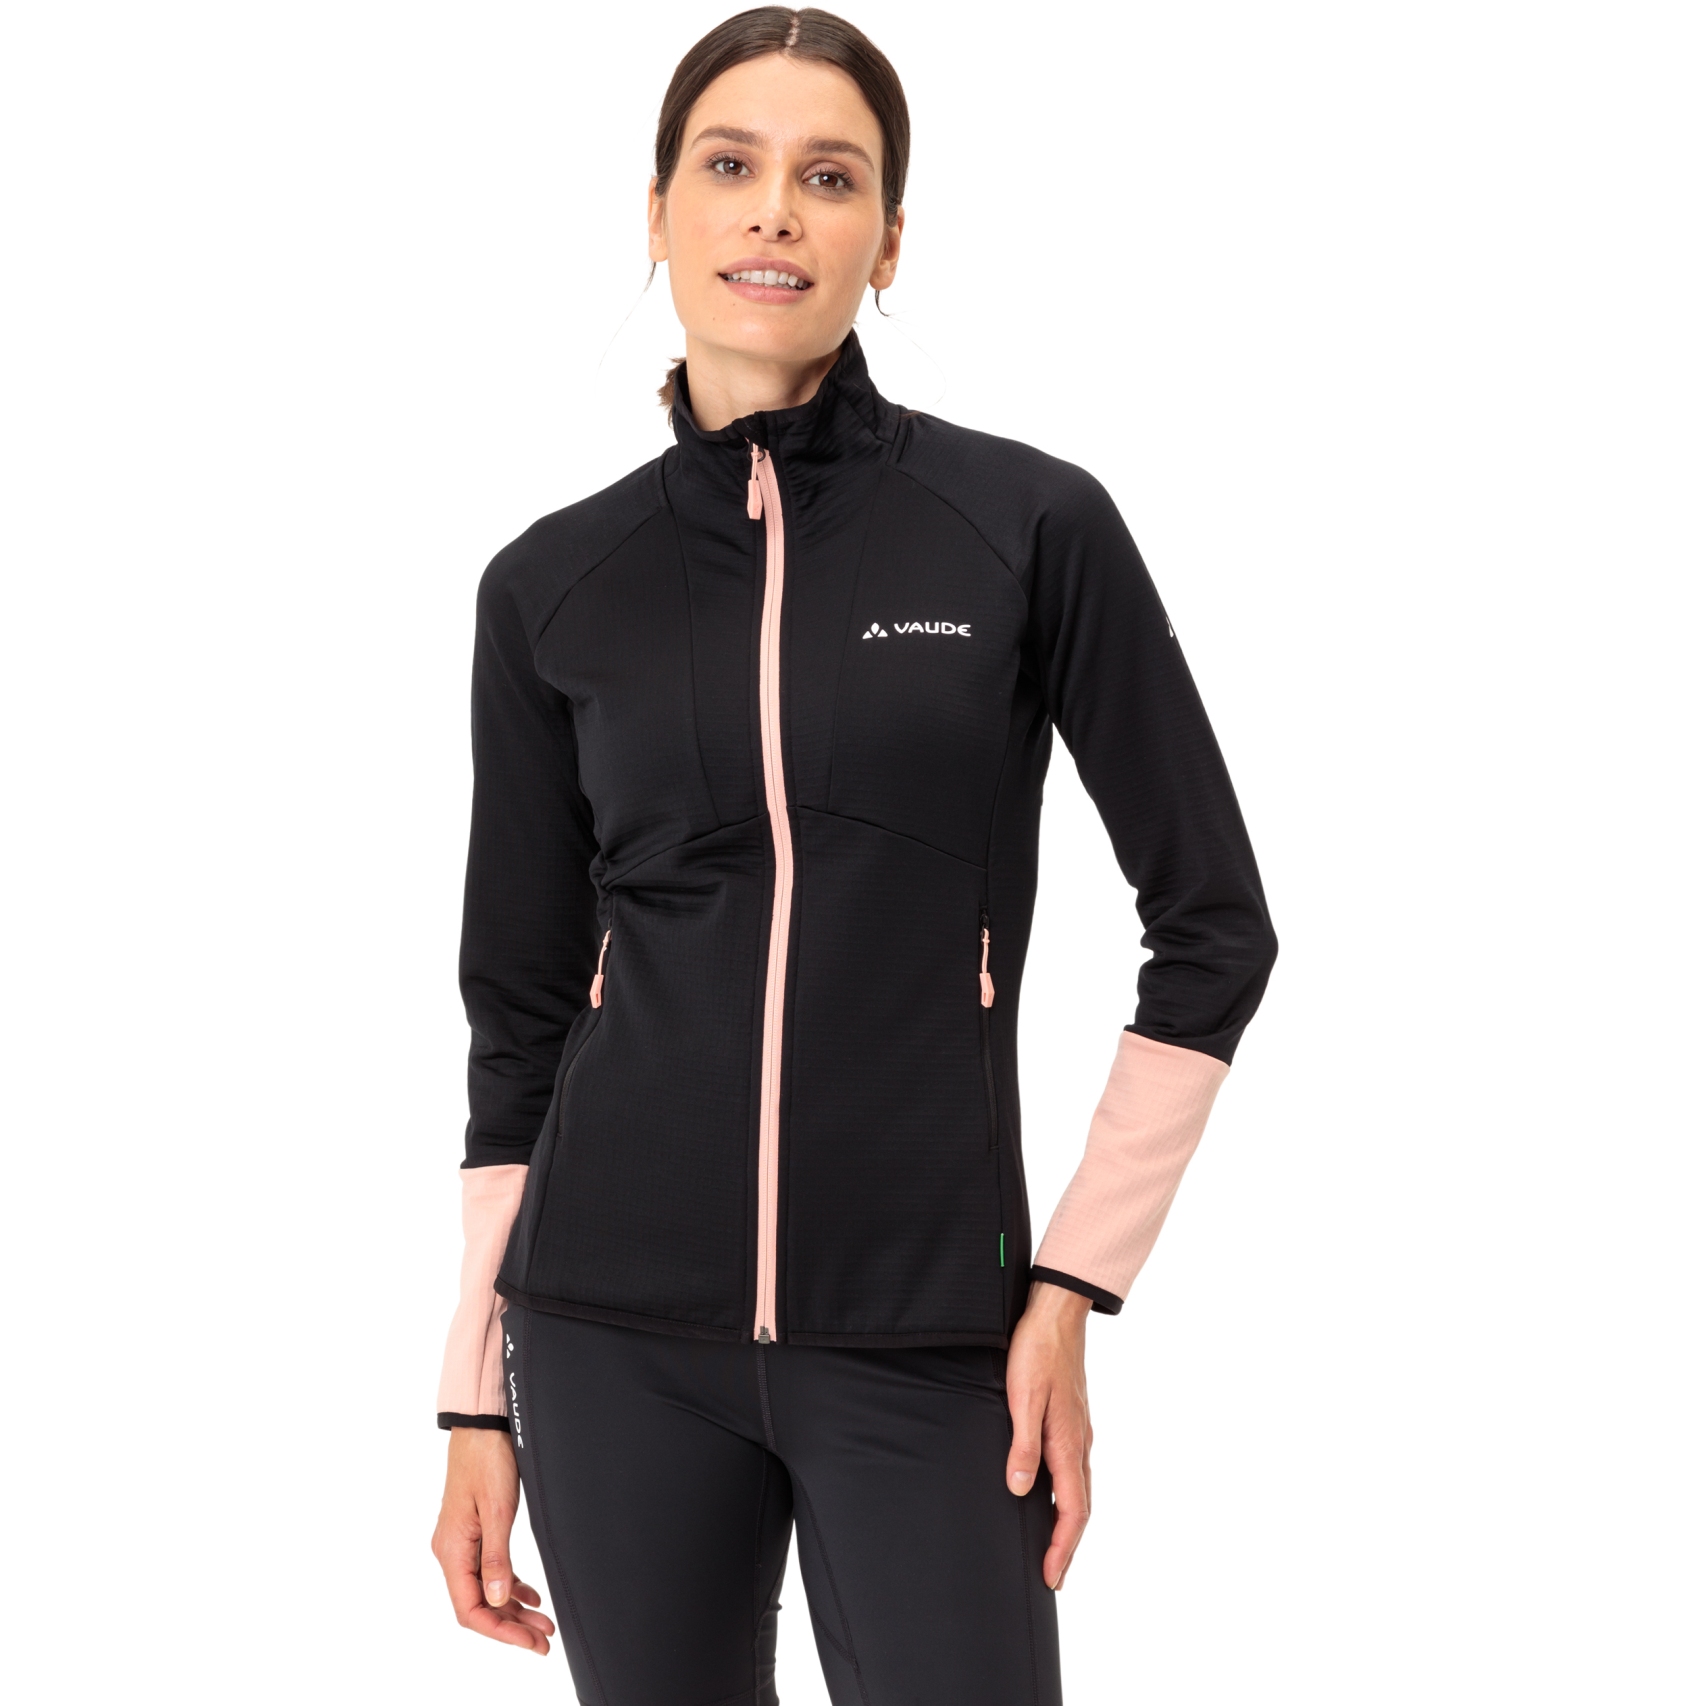 Produktbild von Vaude Monviso II Fleece Full Zip Jacke Damen - schwarz